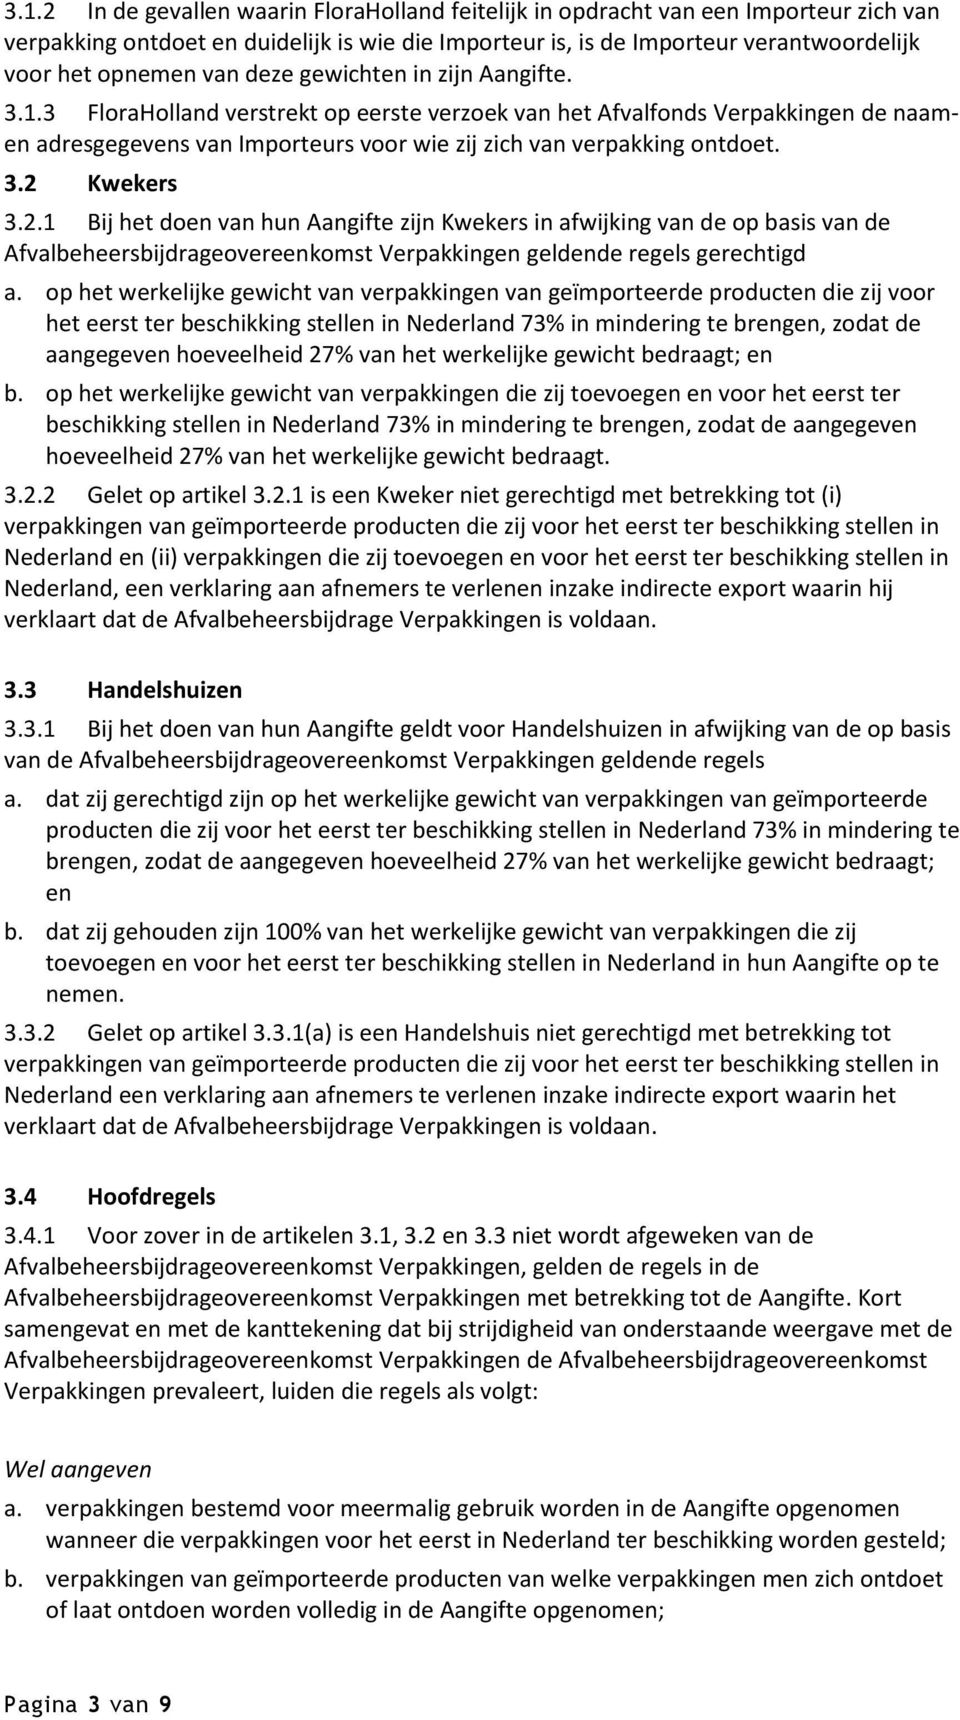 2.1 Bij het doen van hun Aangifte zijn Kwekers in afwijking van de op basis van de Afvalbeheersbijdrageovereenkomst Verpakkingen geldende regels gerechtigd a.